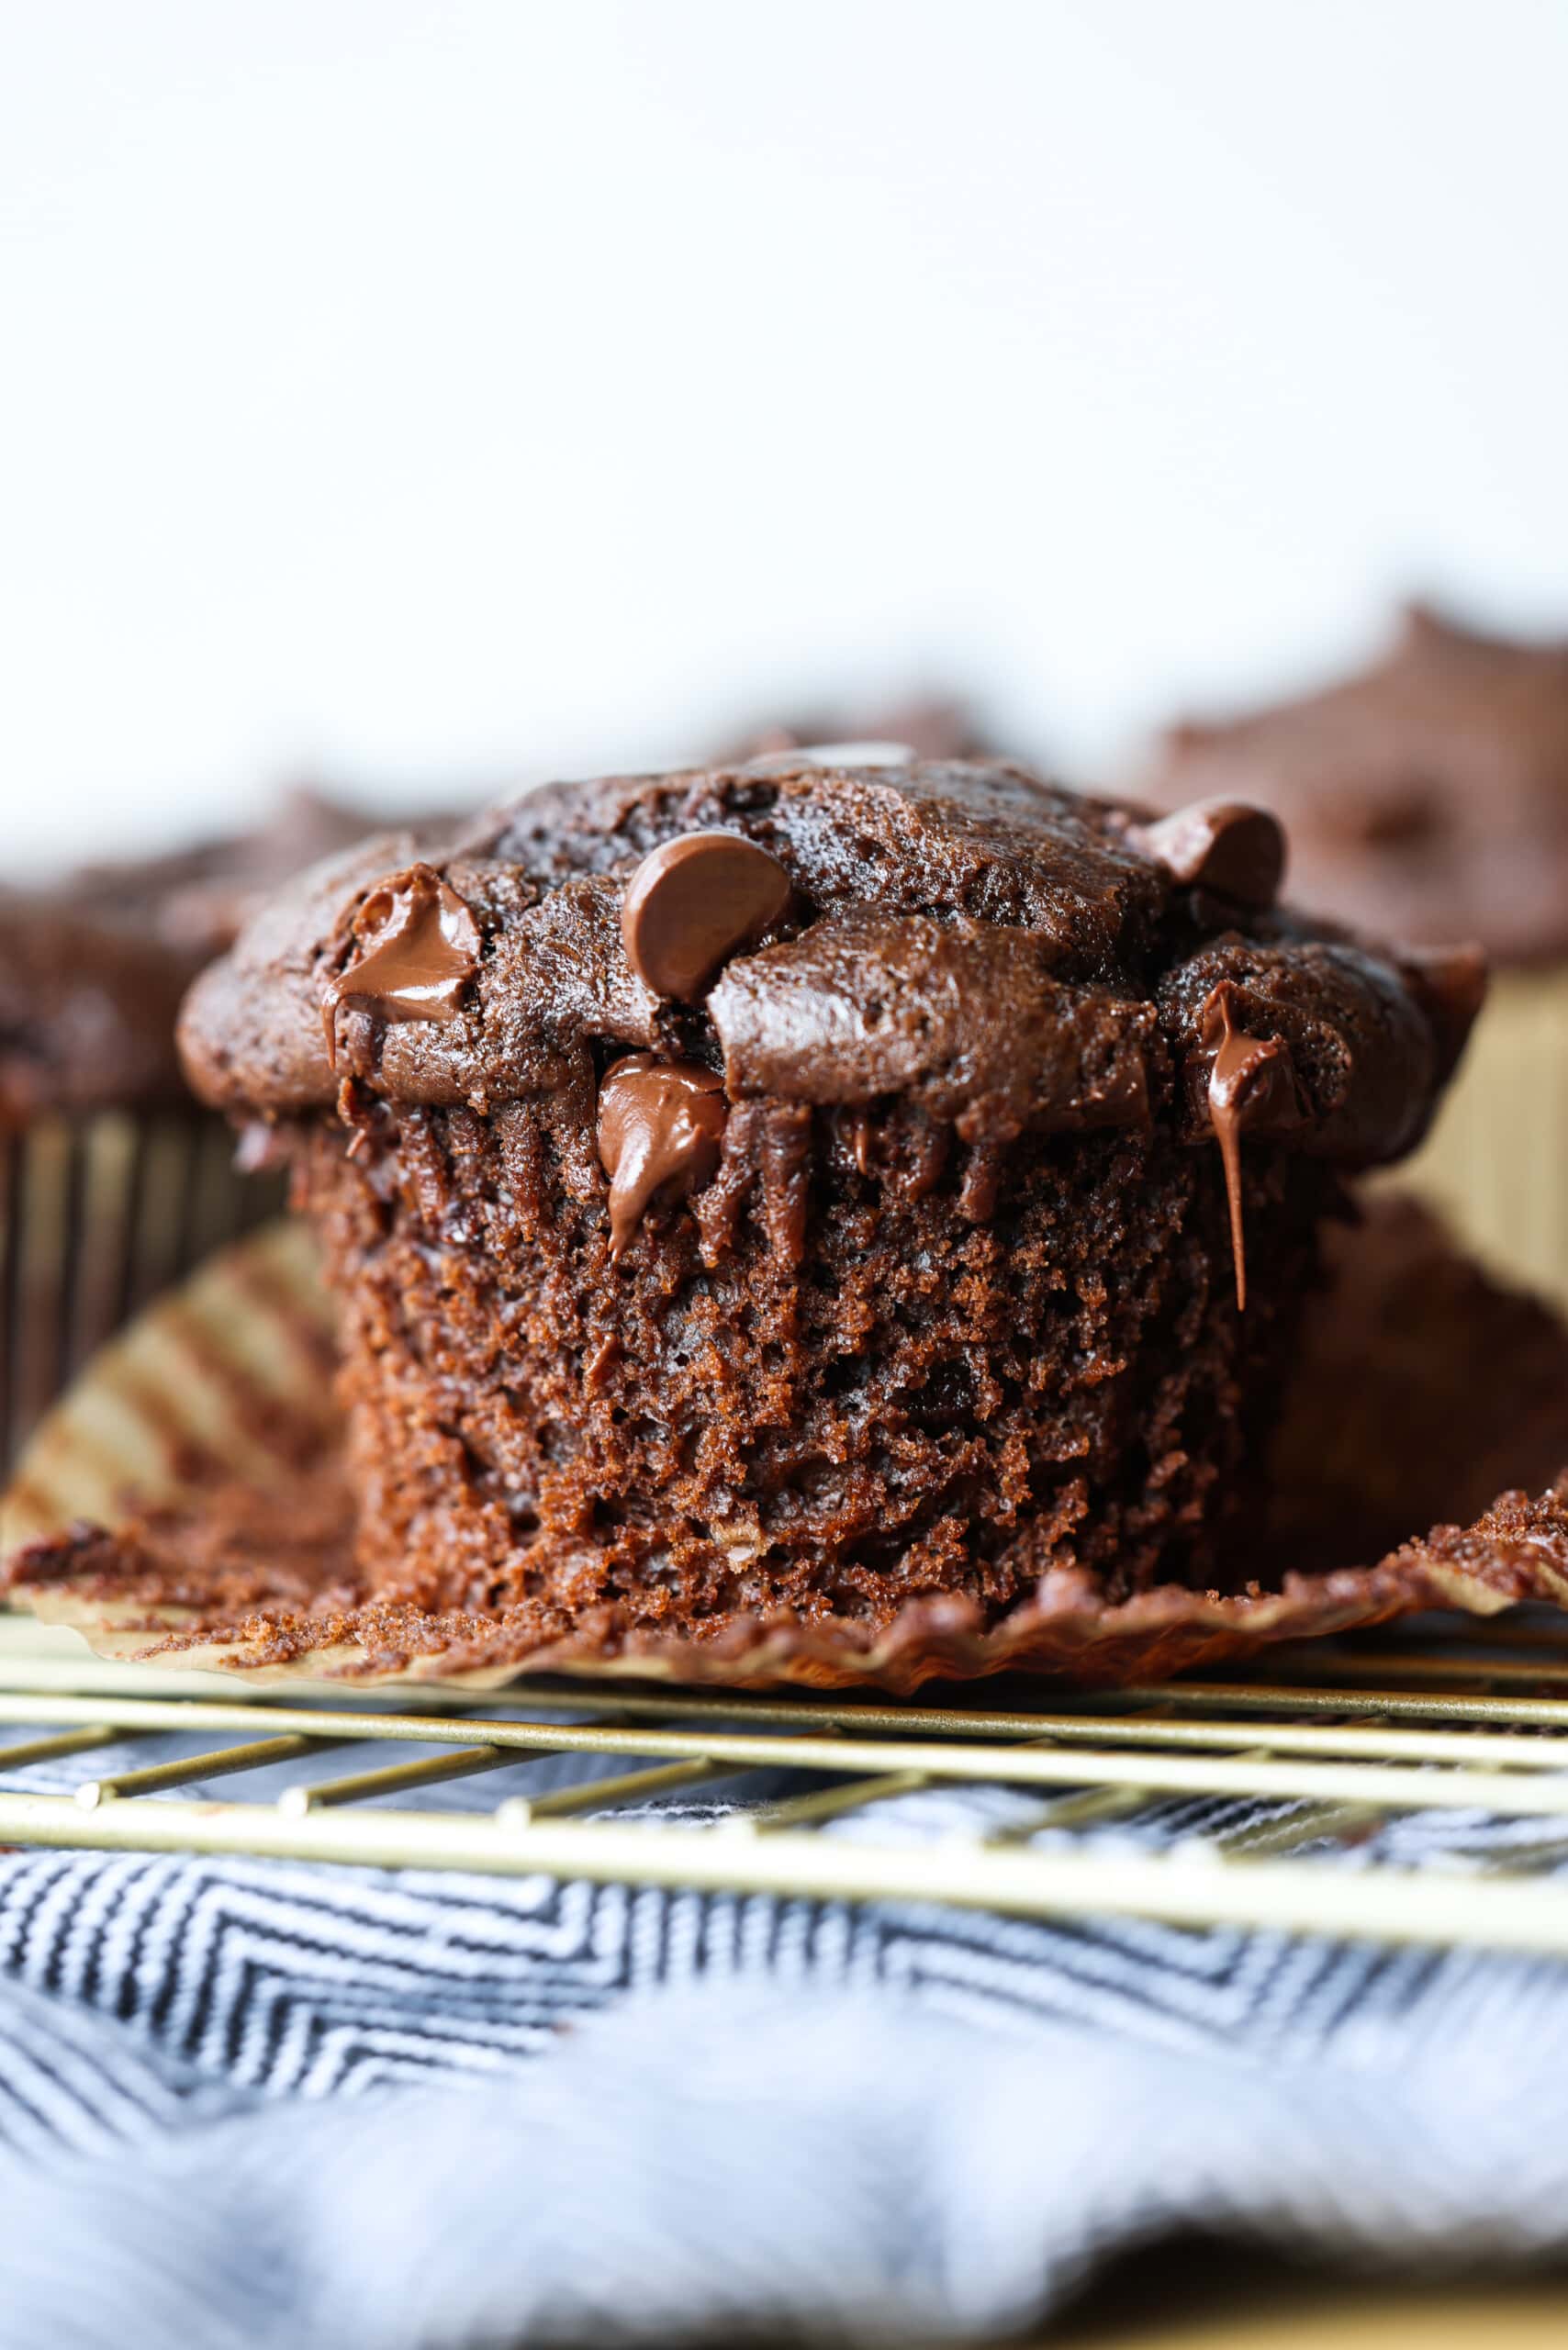 Muffin au chocolat non emballé avec pépites de chocolat fondues